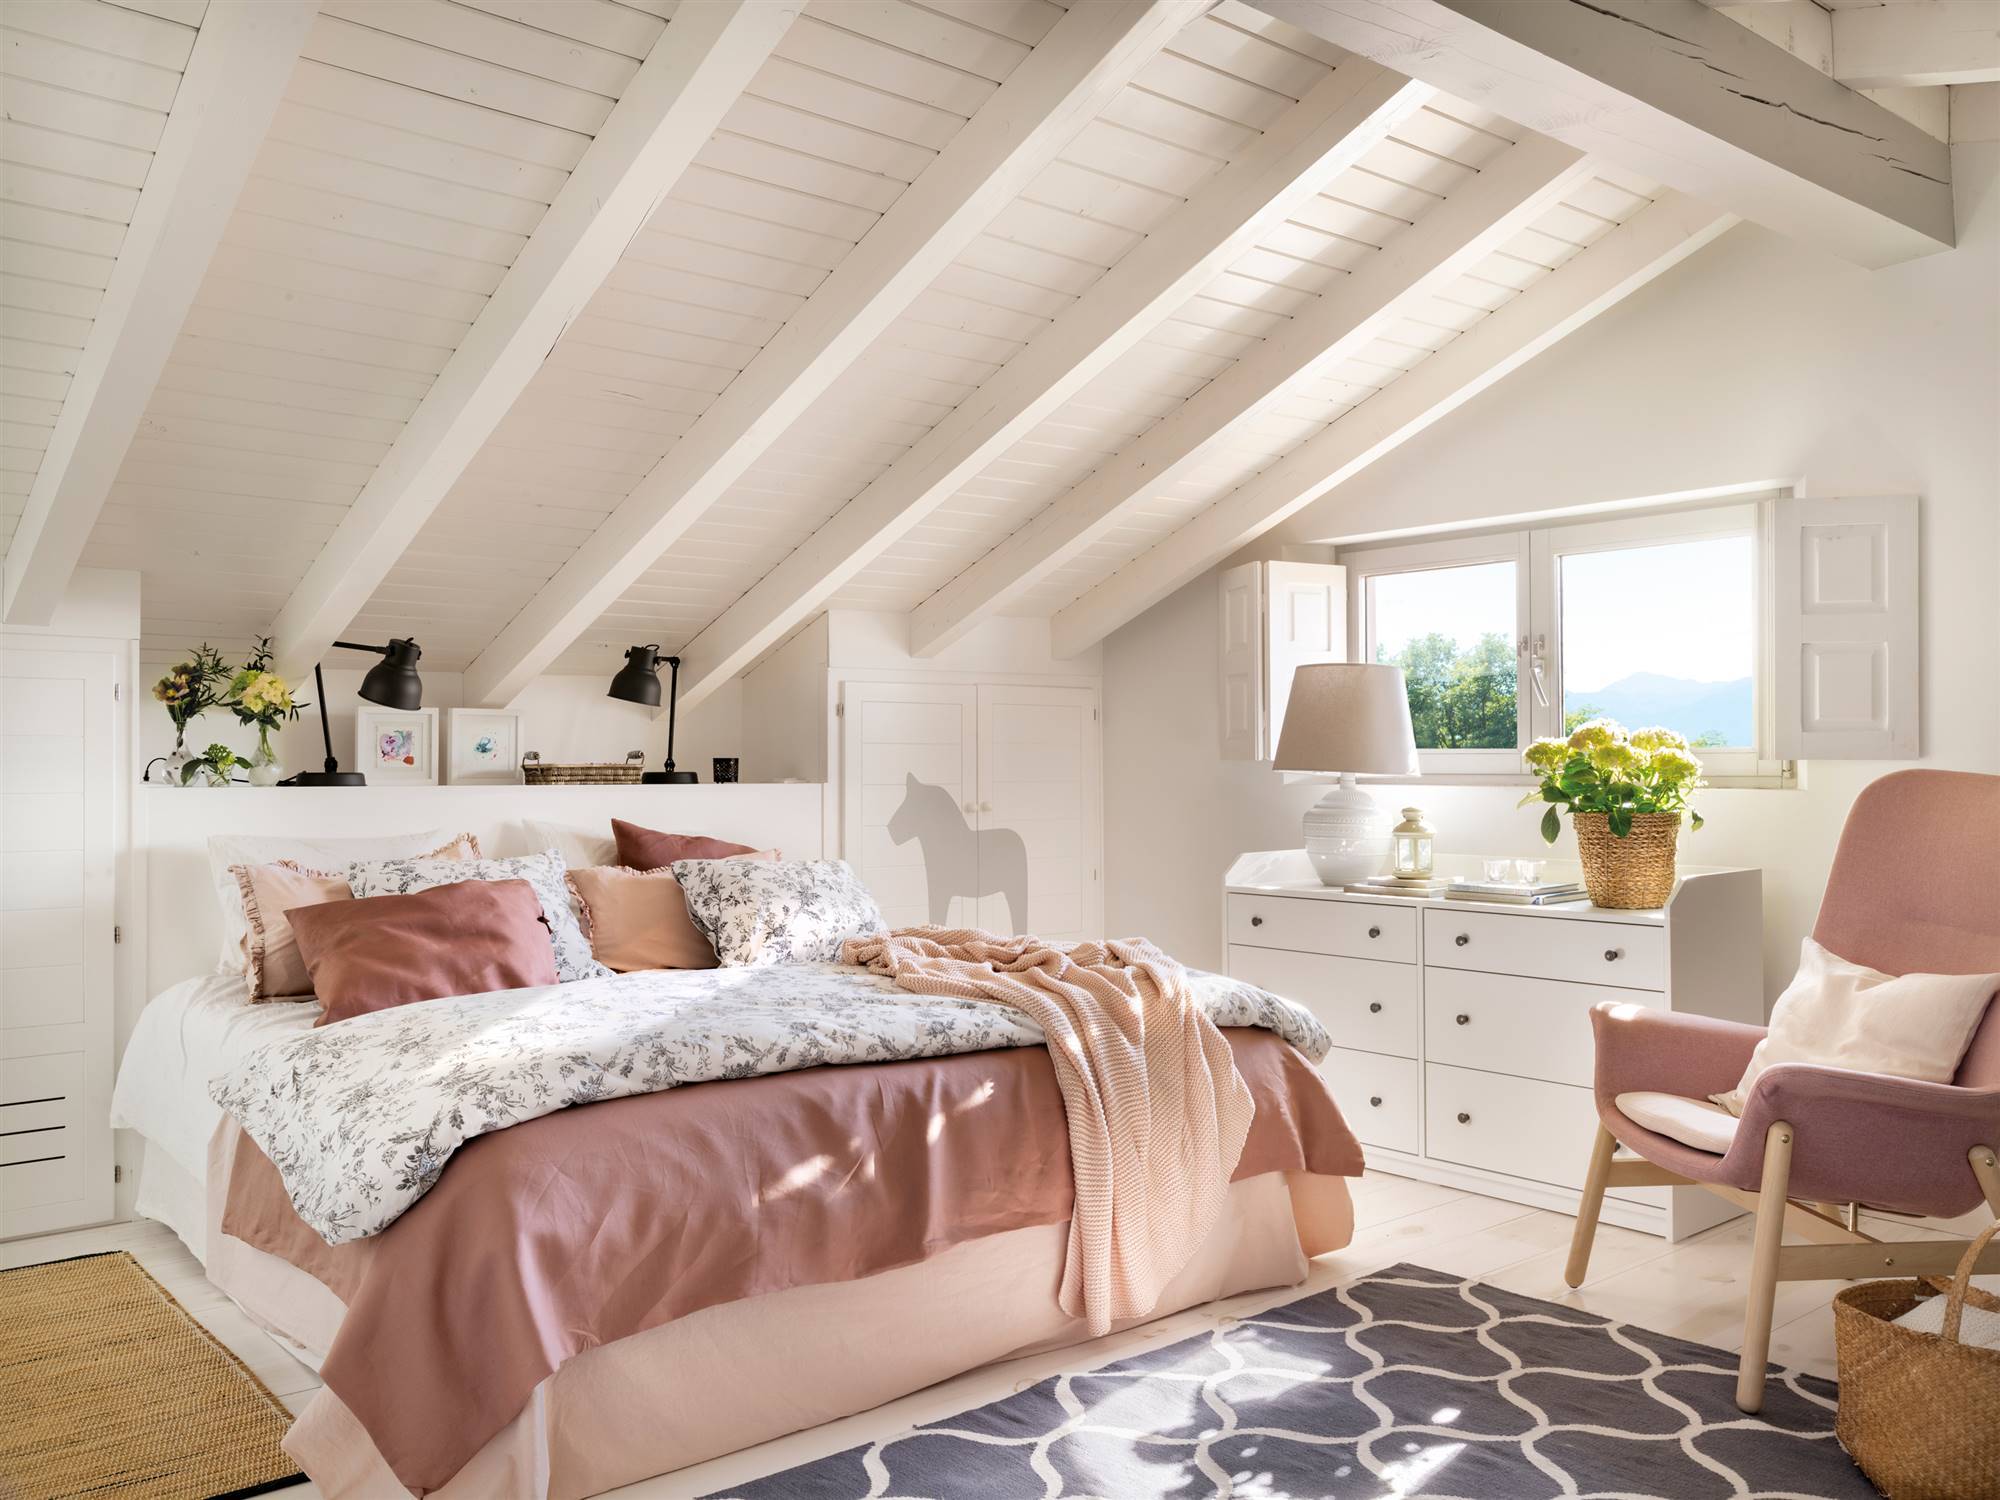 Dormitorio abuhardillado pintado en blanco y con detalles rosa.